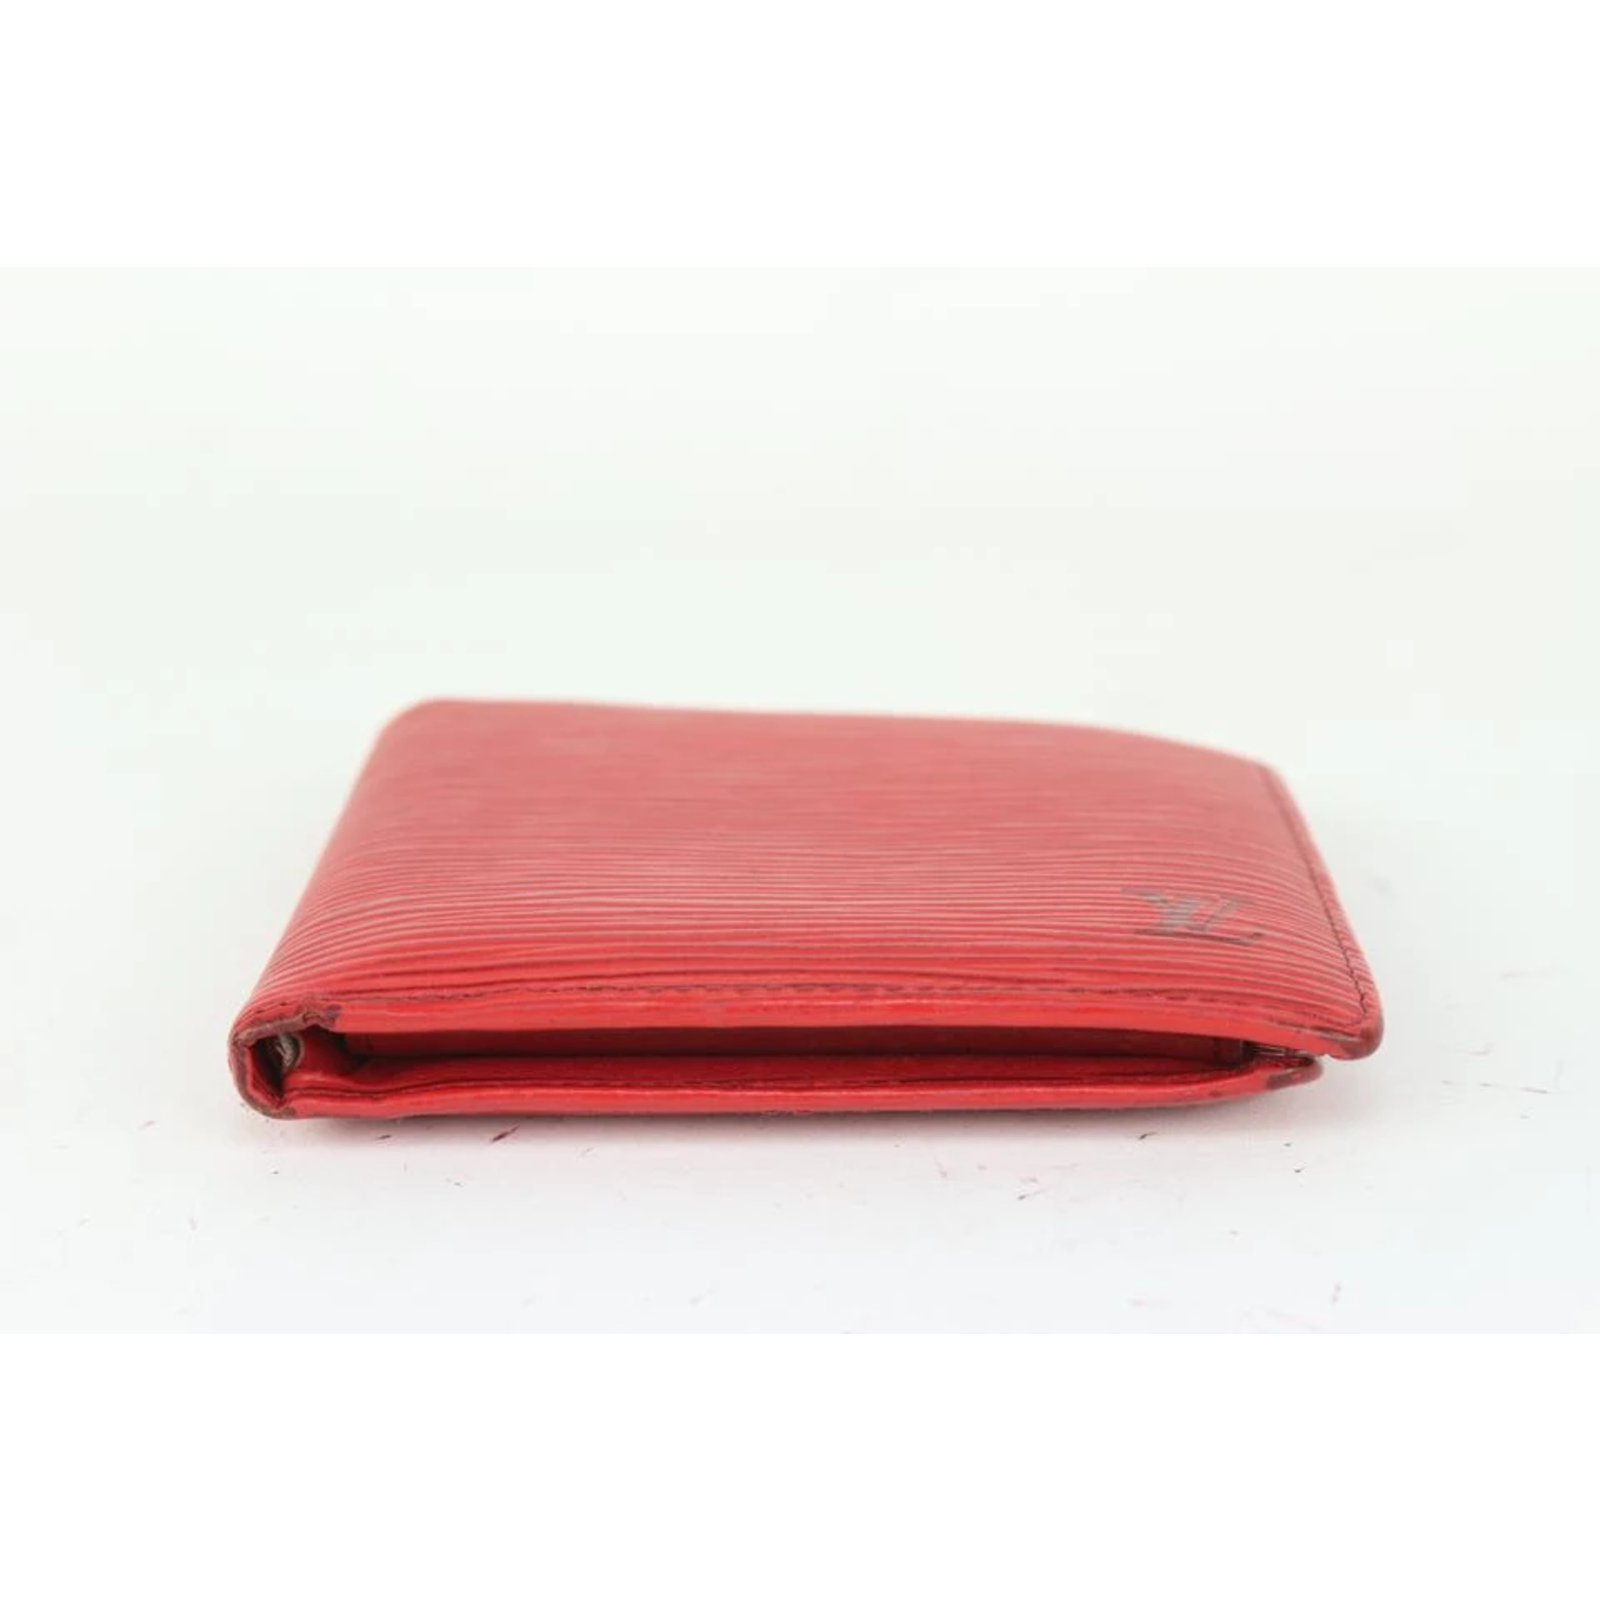 Buy Louis Philippe Men Croc-Embossed Bi-Fold Wallet at Redfynd